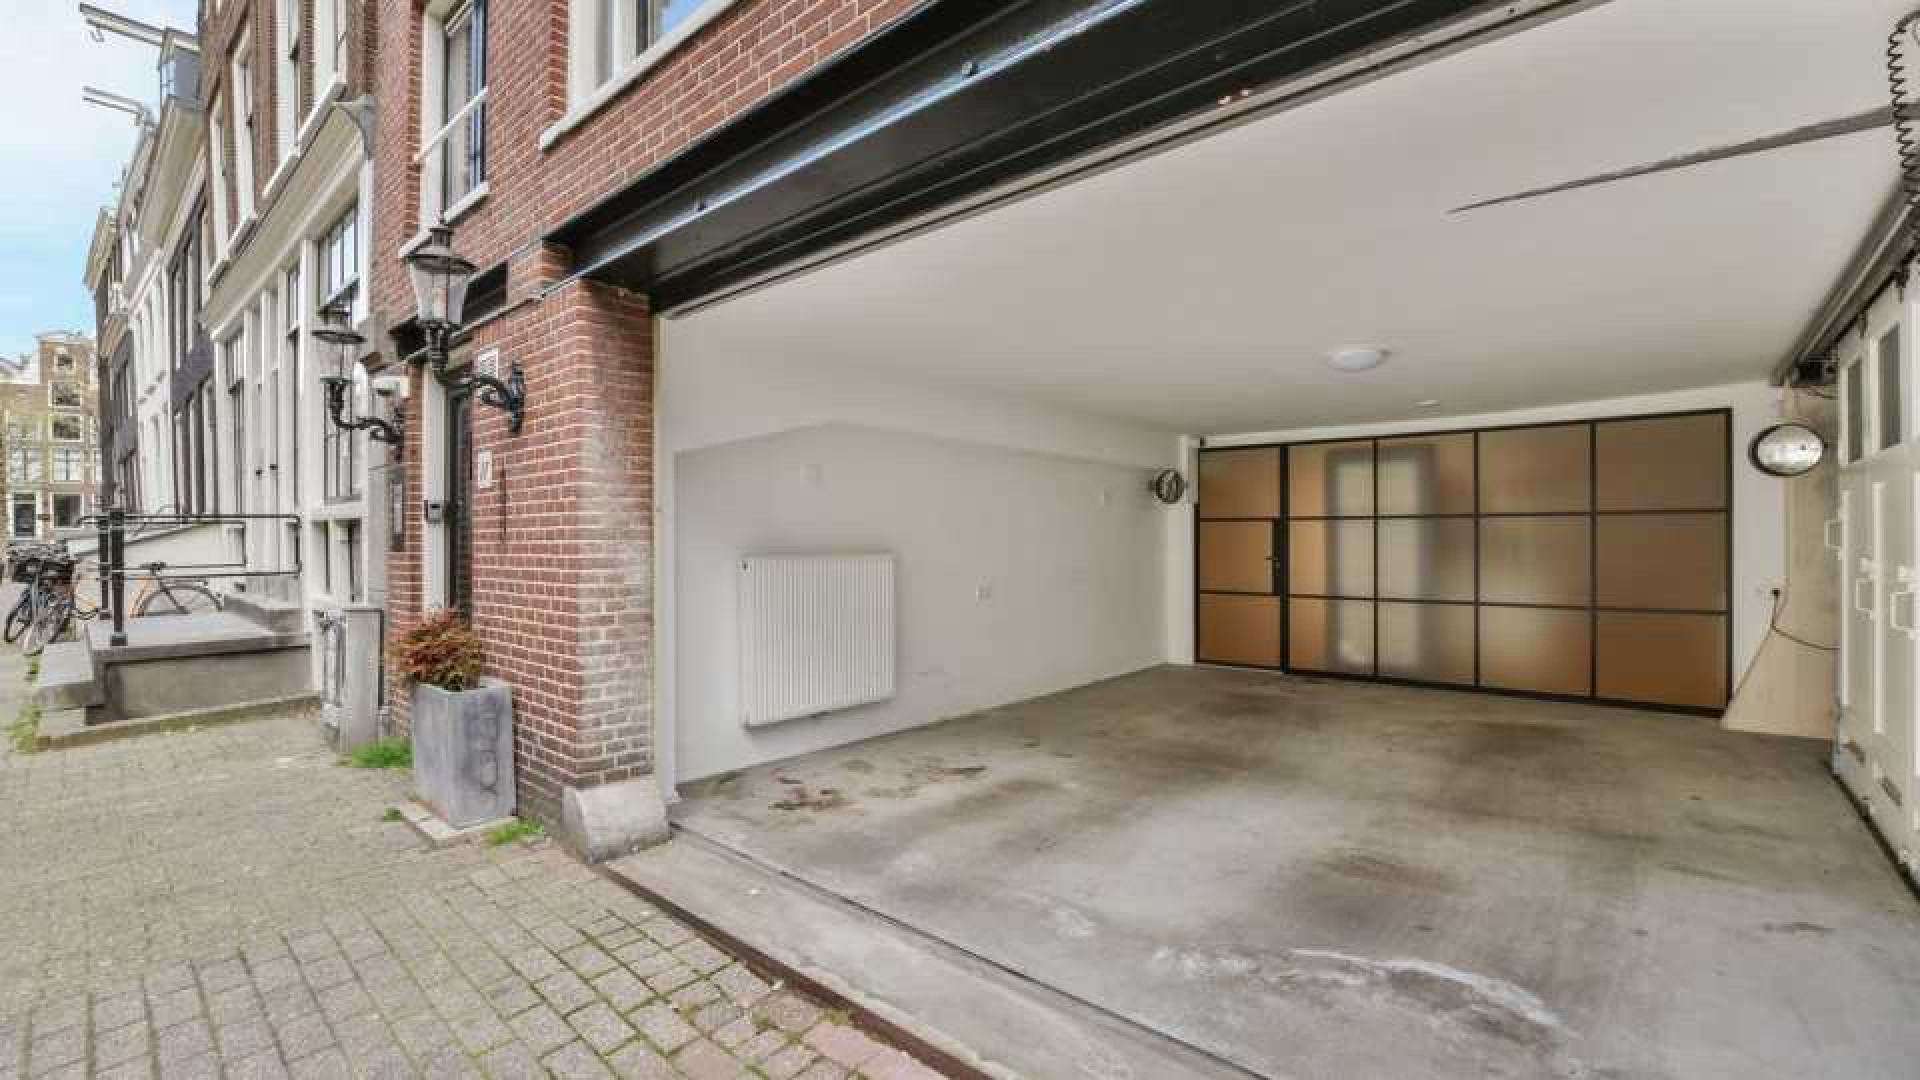 Huis Lil Kleine in centrum Amsterdam verkocht. 14